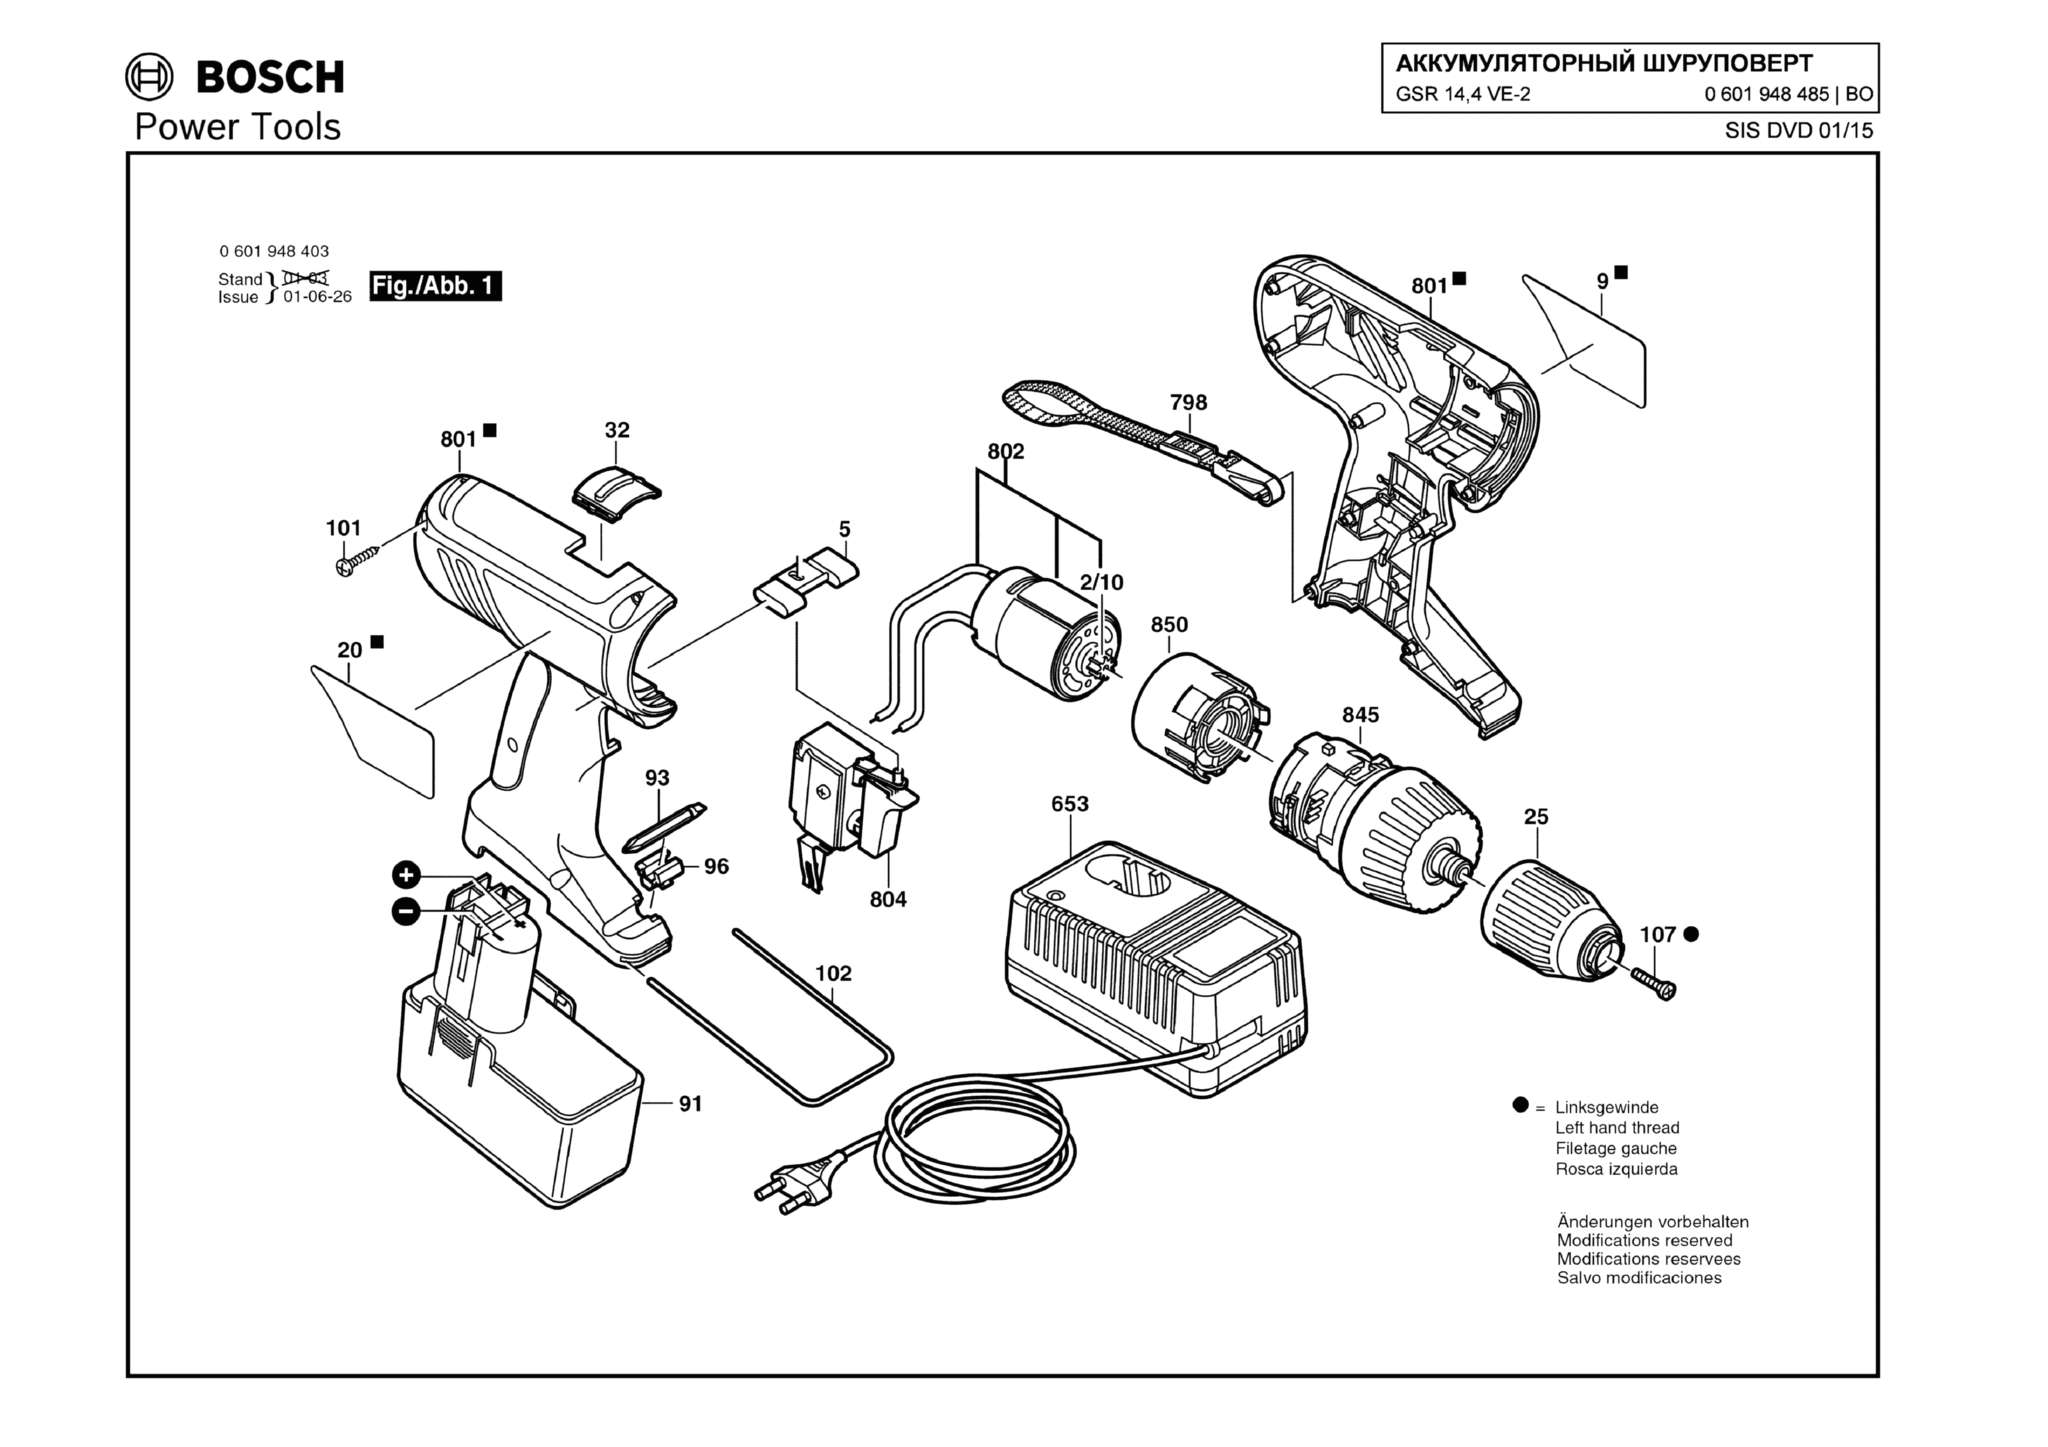 Запчасти, схема и деталировка Bosch GSR 14,4 VE-2 (ТИП 0601948485)